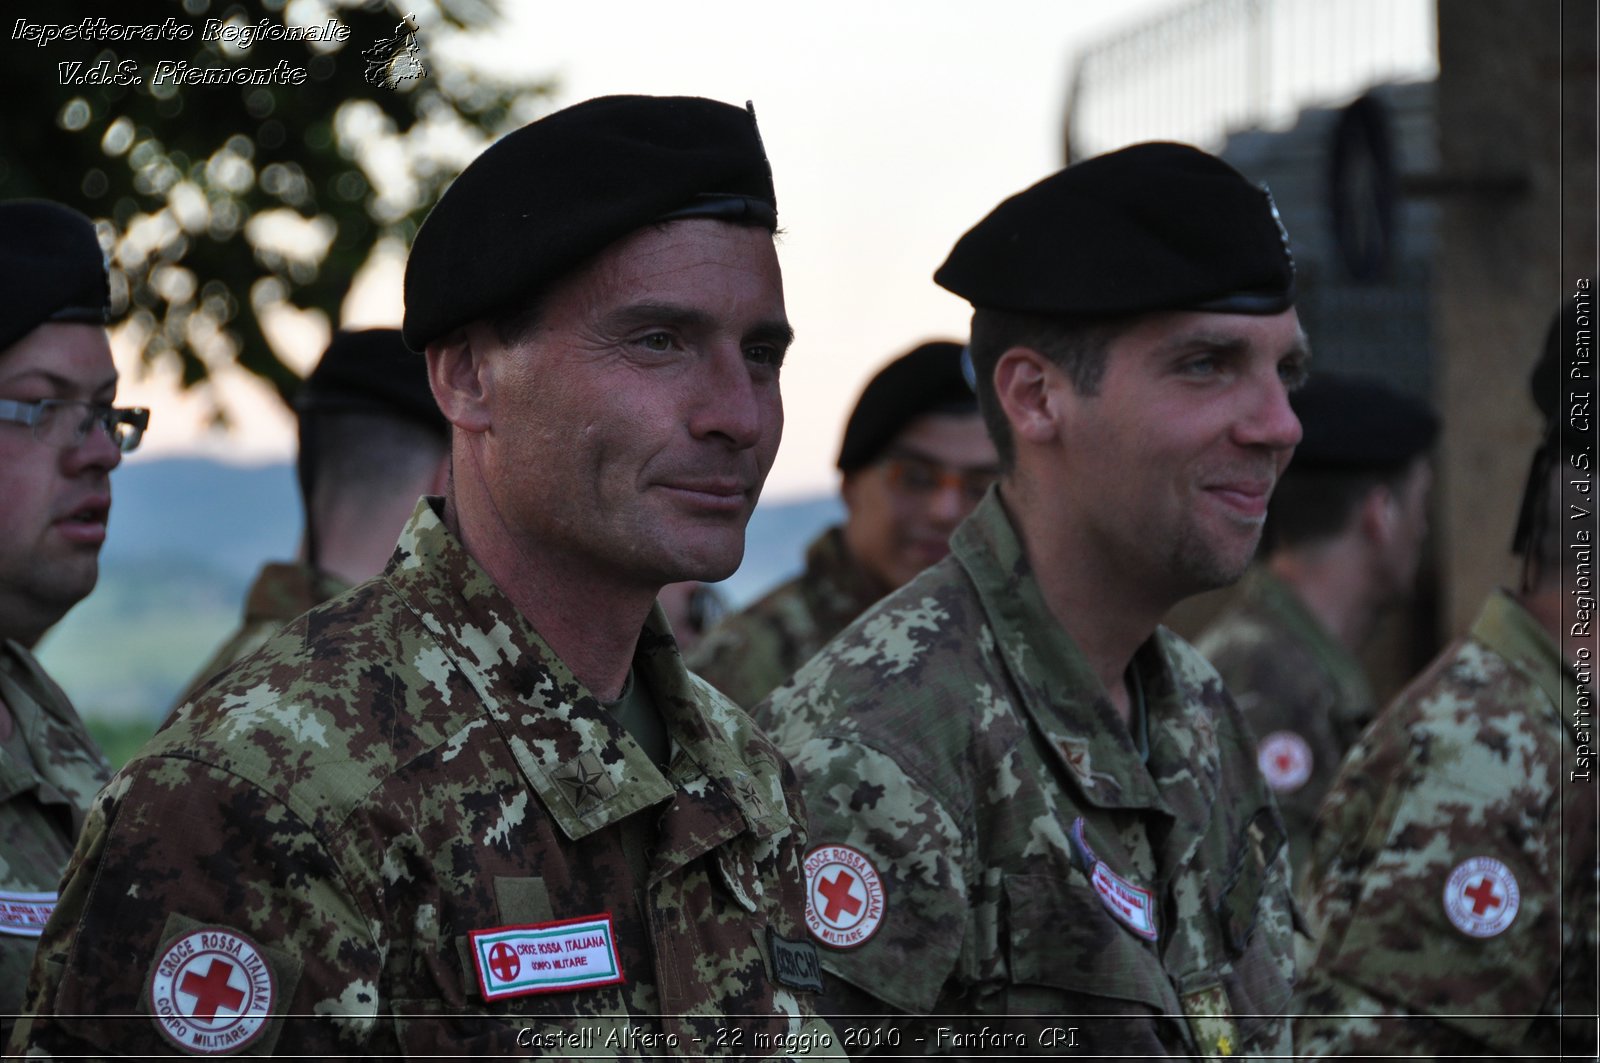 Castell'Alfero - 22 maggio 2010 - Fanfara CRI -  Croce Rossa Italiana - Ispettorato Regionale Volontari del Soccorso Piemonte